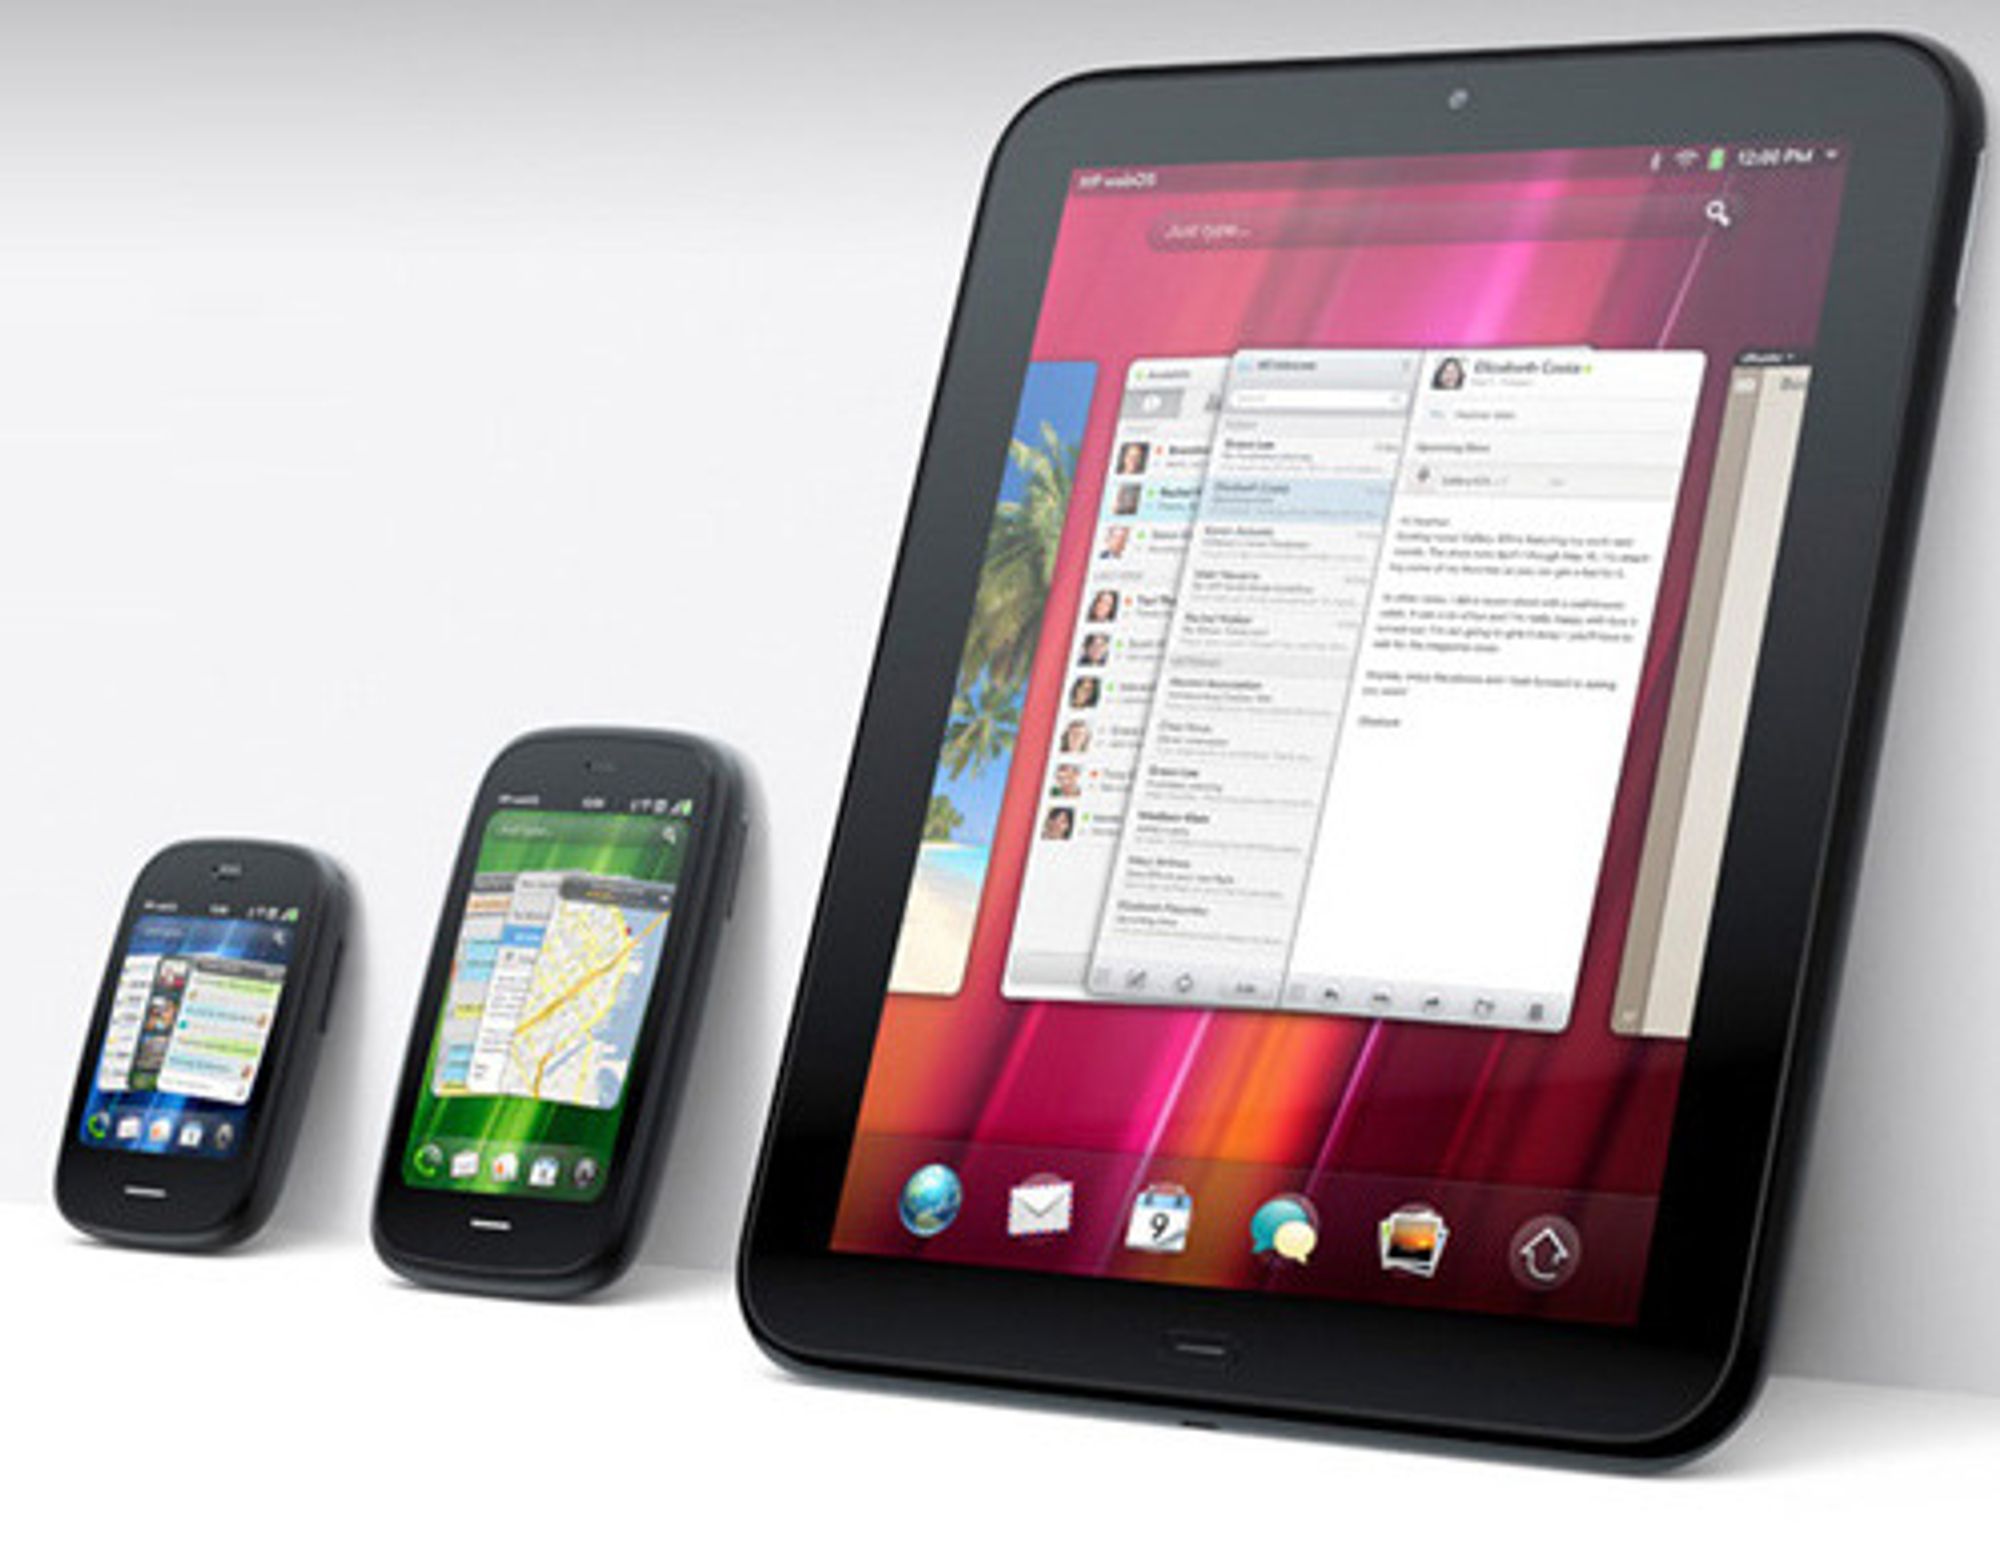 HPs nye WebOS-enheter: Veer, Pre3 og TouchPad.